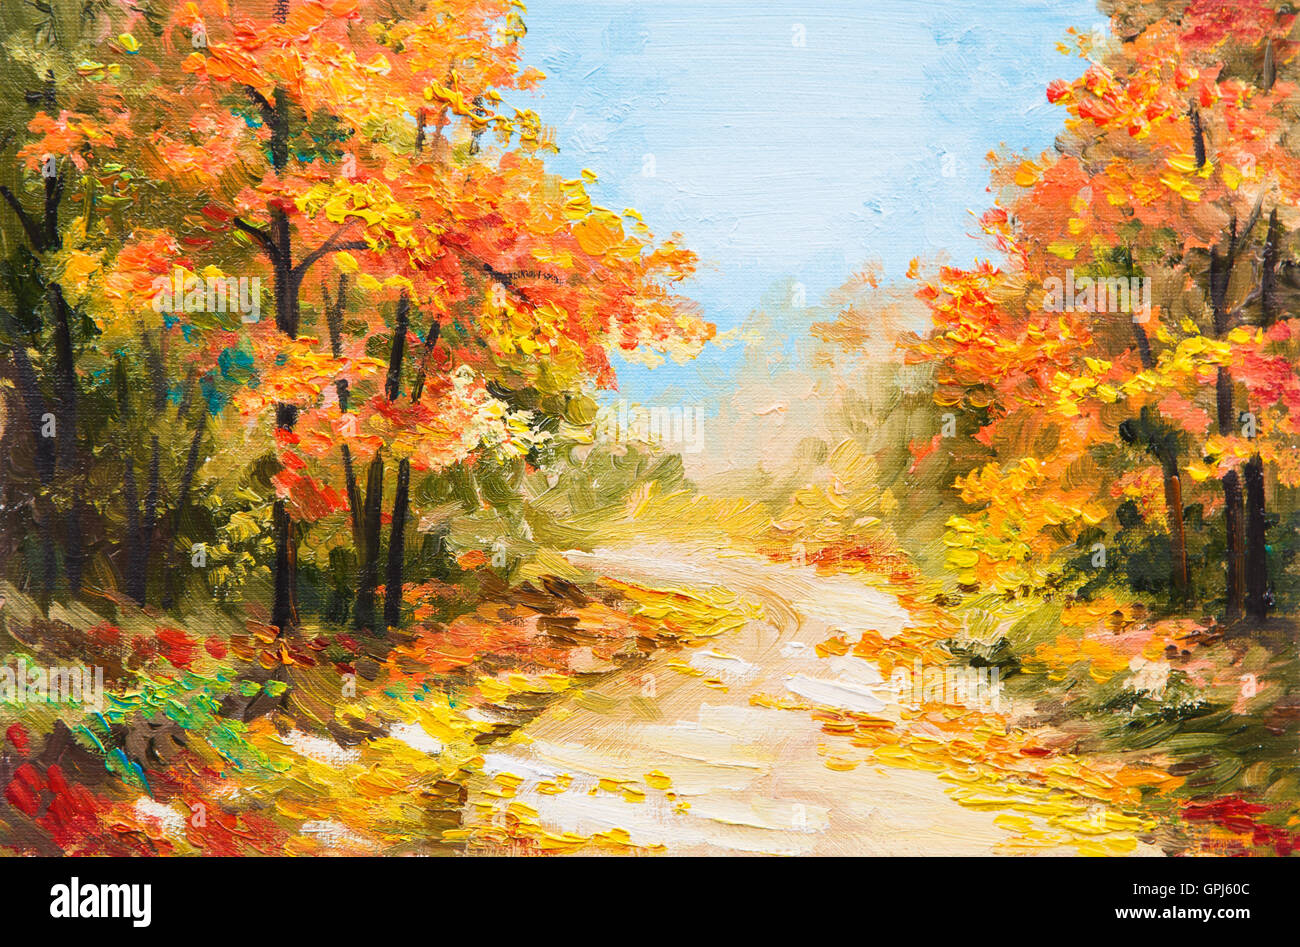 Peinture à l'huile - forêt d'automne, chemin dans la forêt Banque D'Images